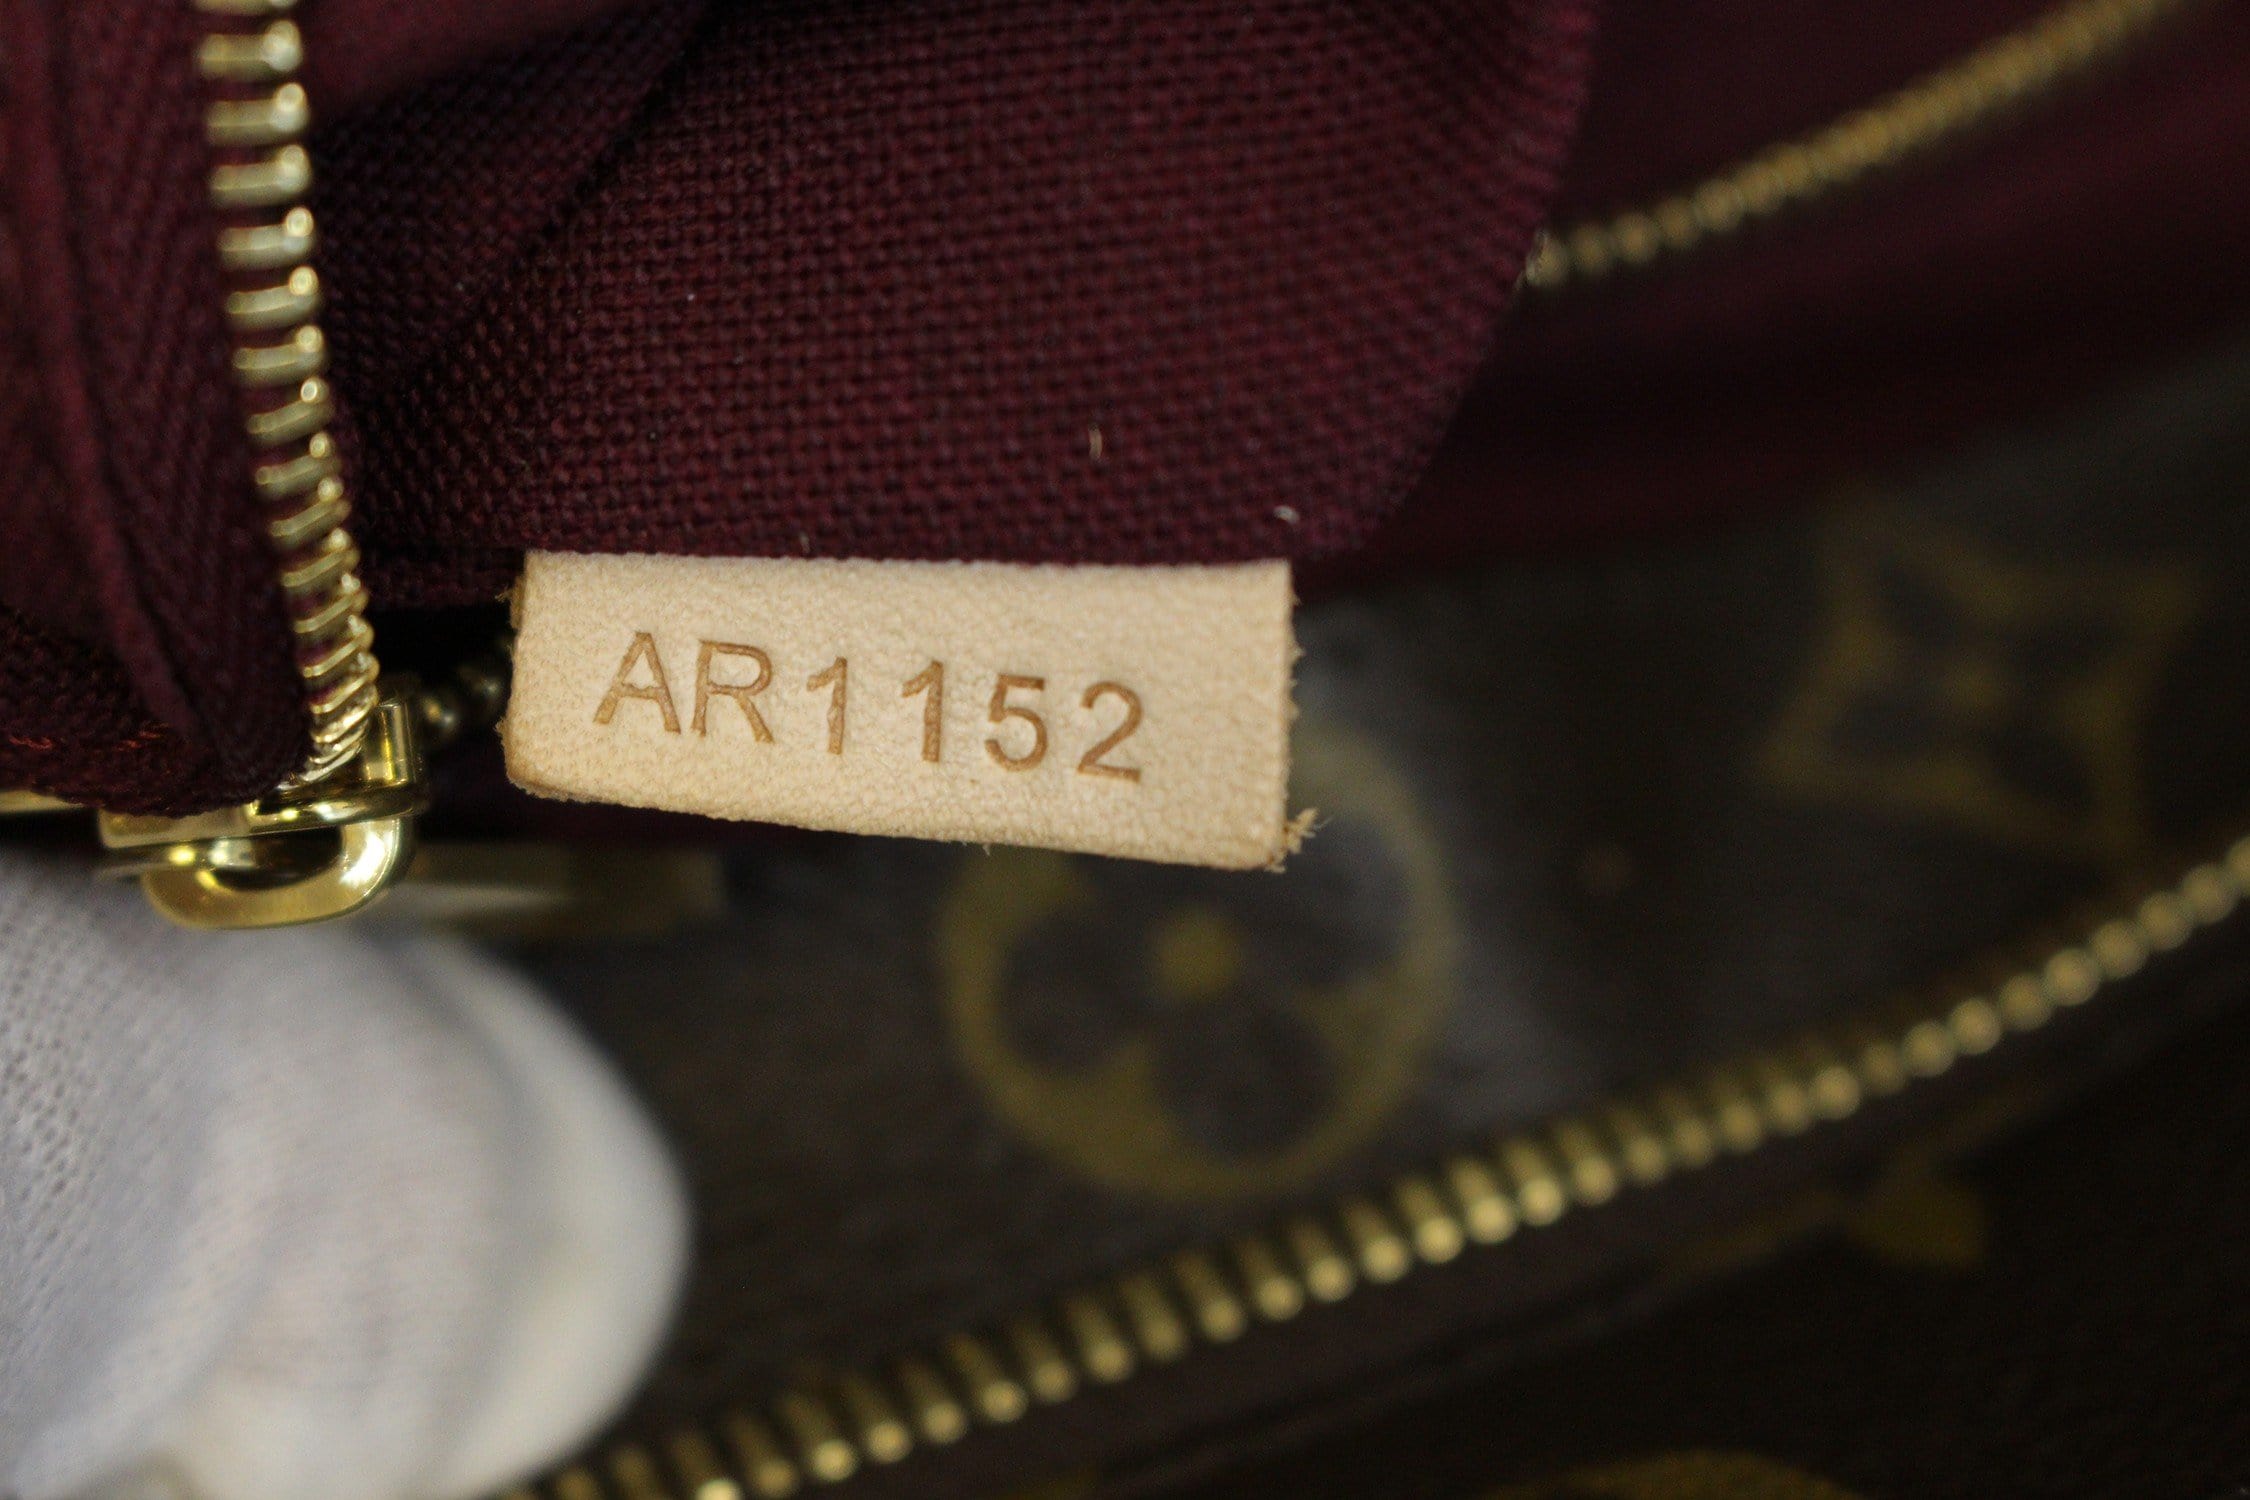 Raspail cloth tote Louis Vuitton Brown in Cloth - 31973972